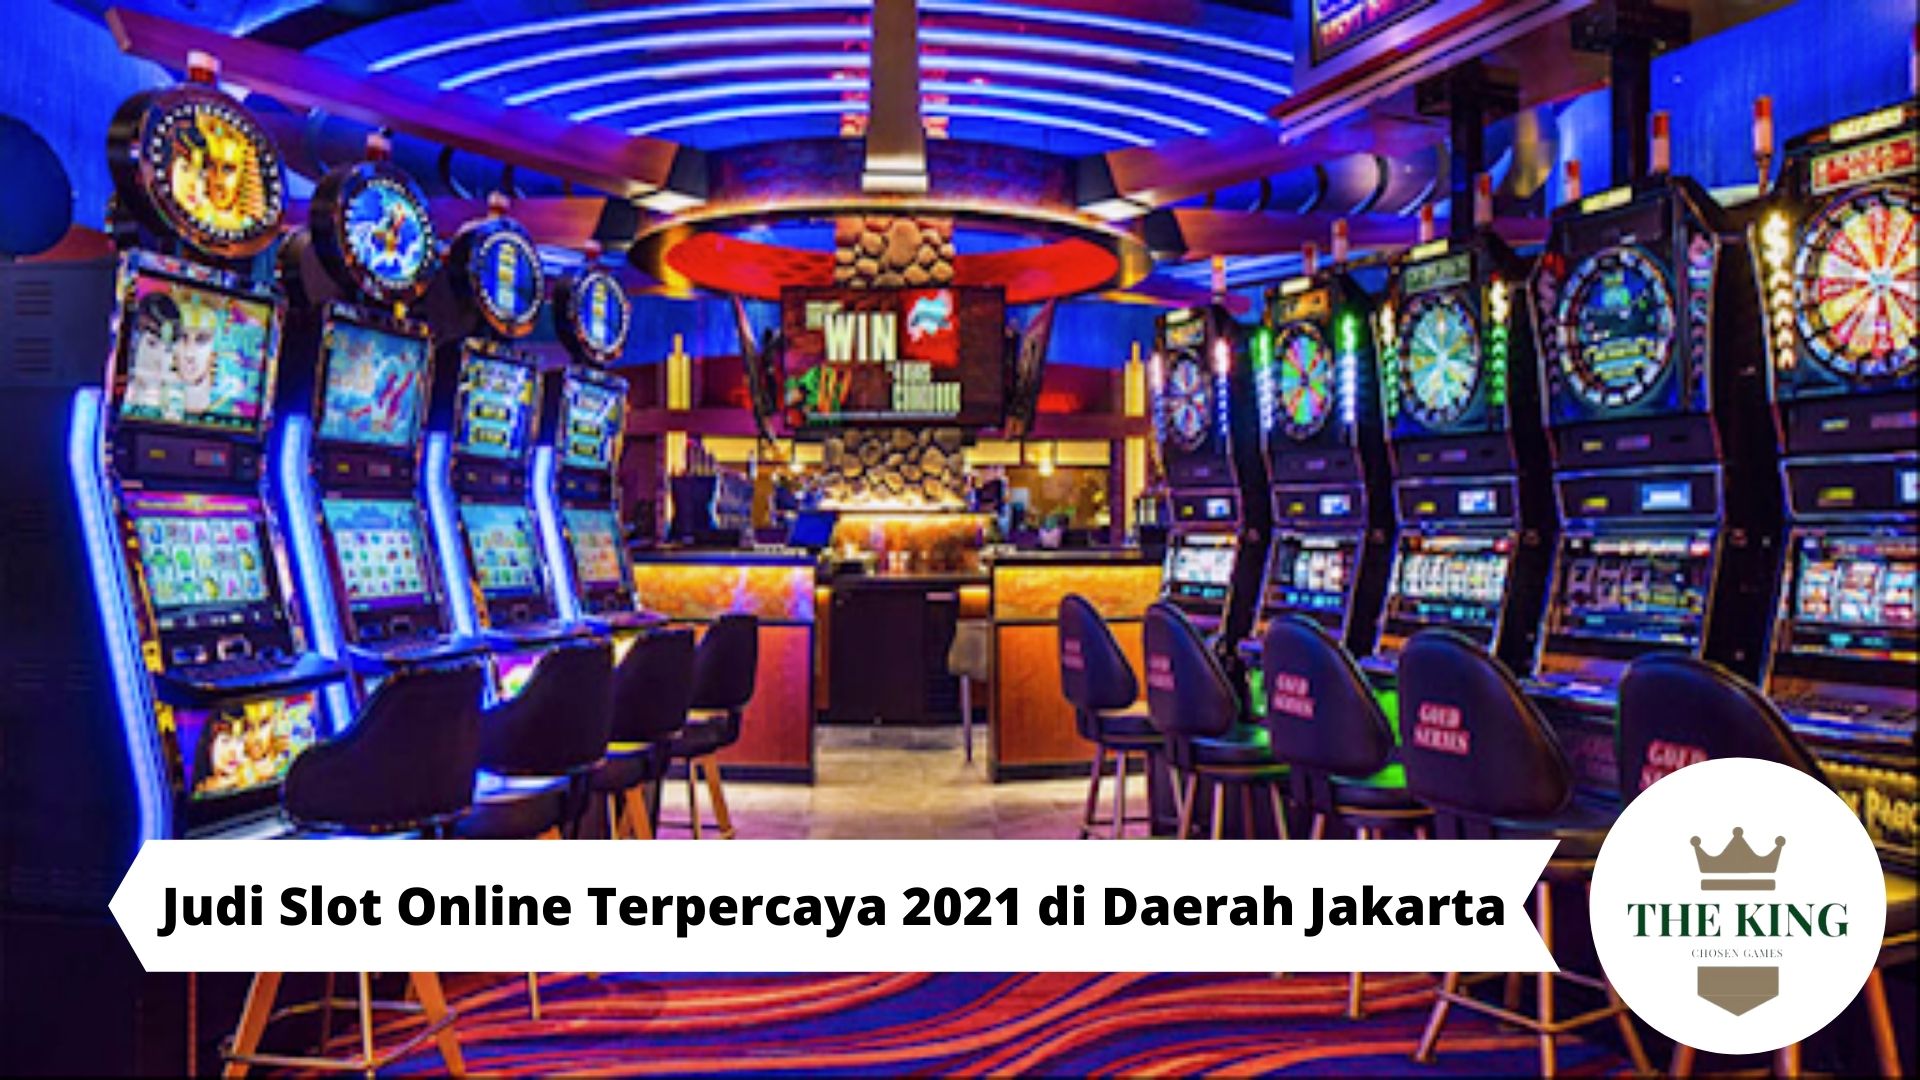 Judi Slot Online Terpercaya 2021 di Daerah Jakarta